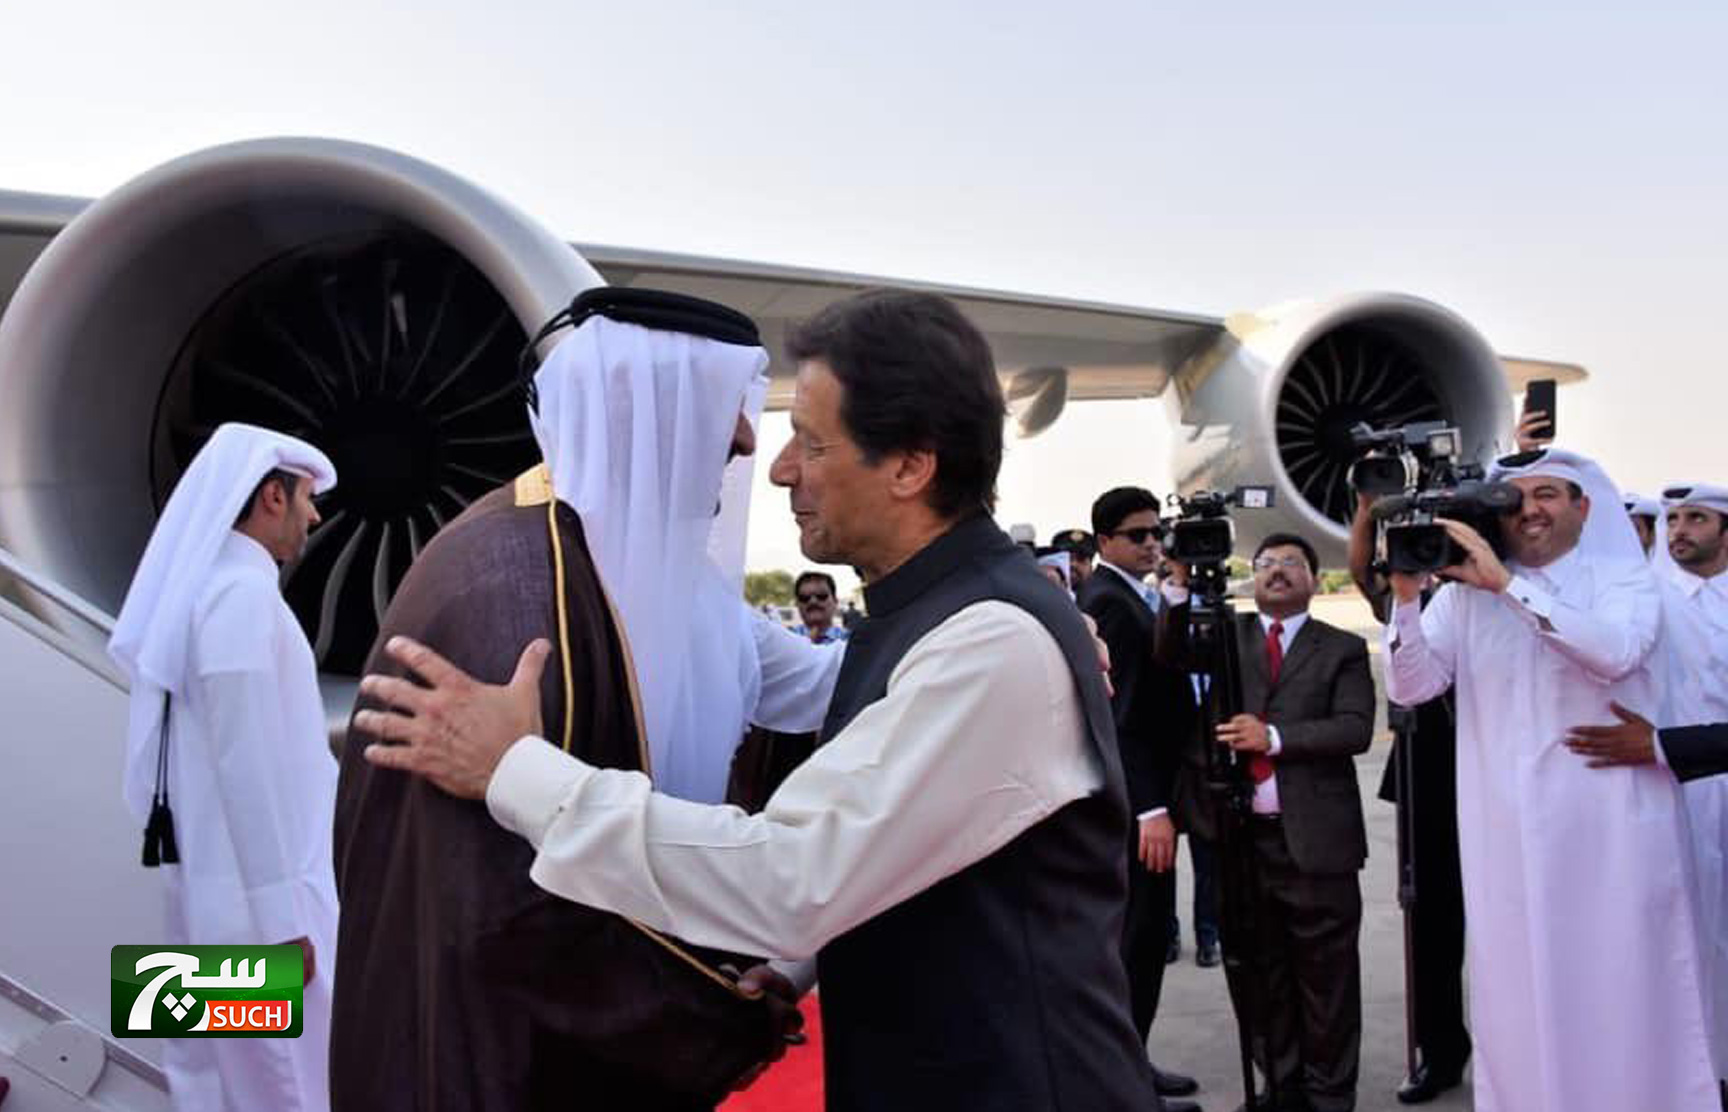 أمير قطر يغادر باكستان بعد محادثات تناولت بناء شراكة اقتصادية قوية